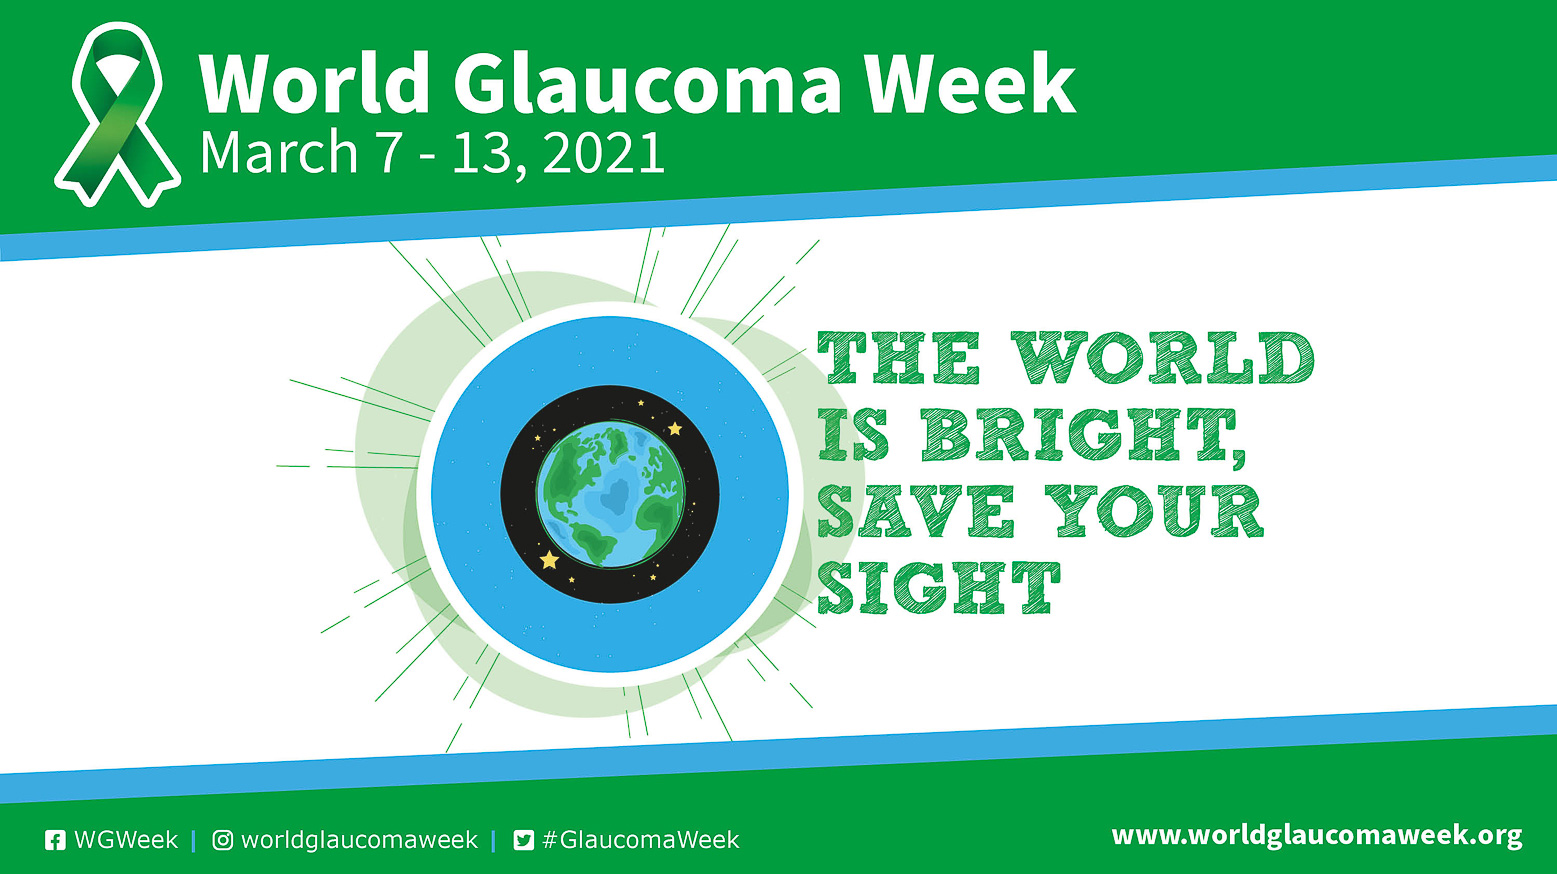 Raque Medina – Semana del Glaucoma